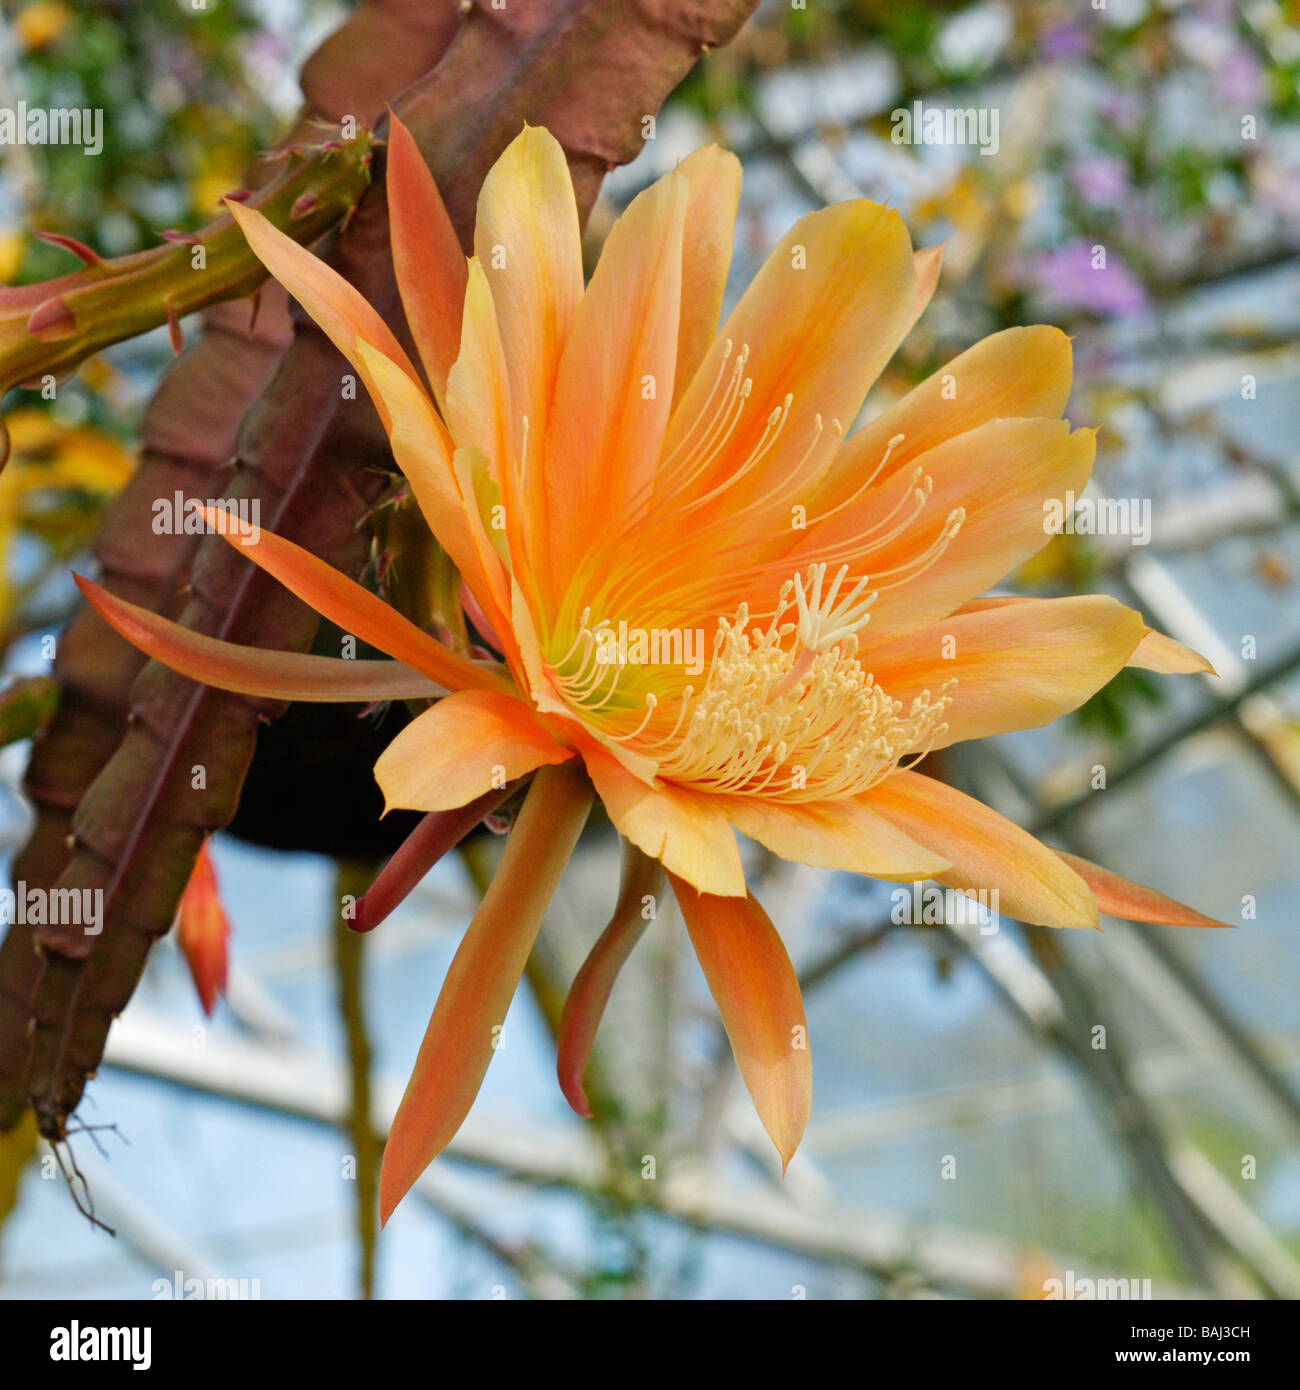 Epiphyllum hybrid Botanical Gardens Swansea UK Stock Photo